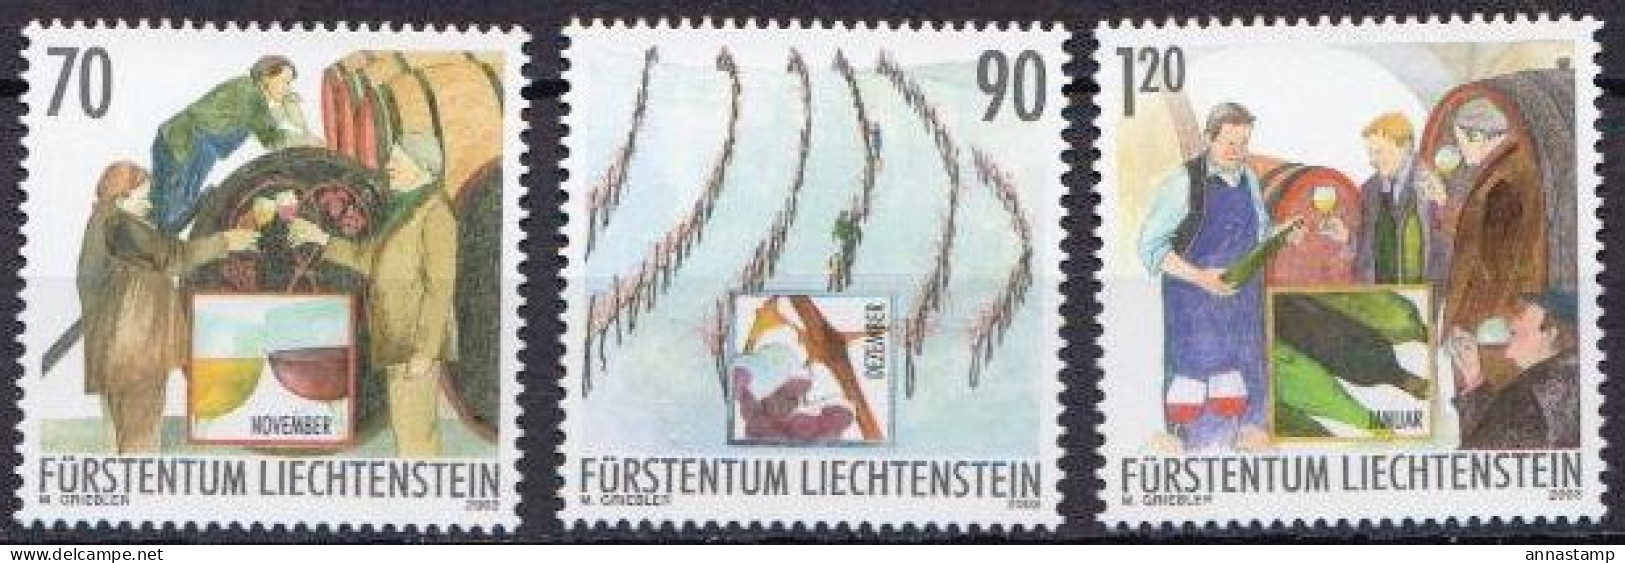 Liechtenstein MNH Sets - Obst & Früchte